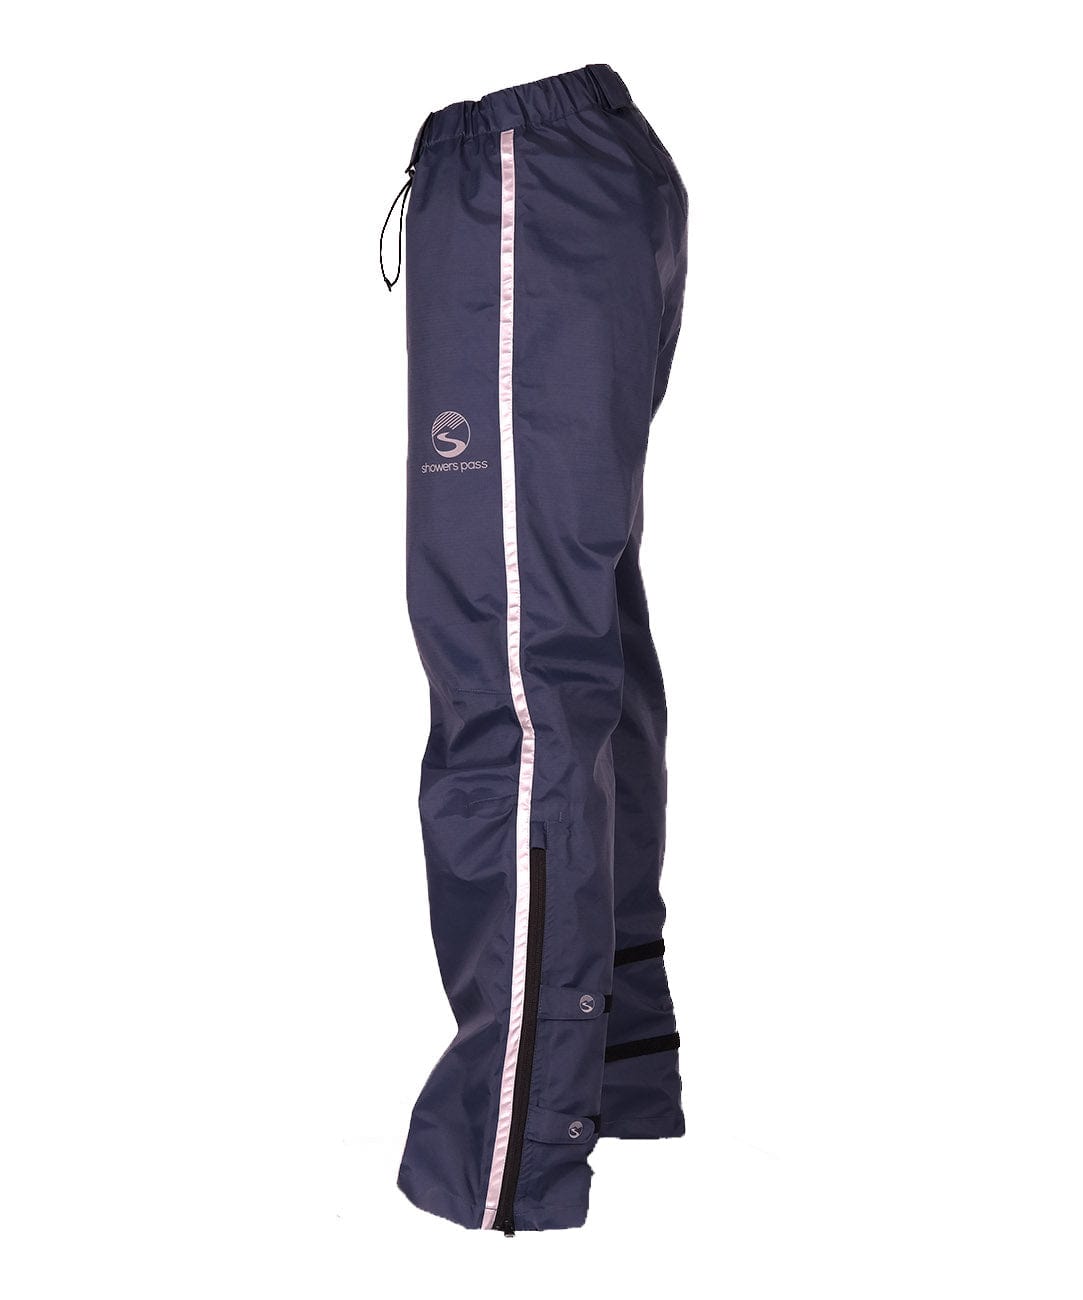 Showers Pass Men's 3 Layer Waterproof Transit Rain Pants (Black - Small) :  : Fashion